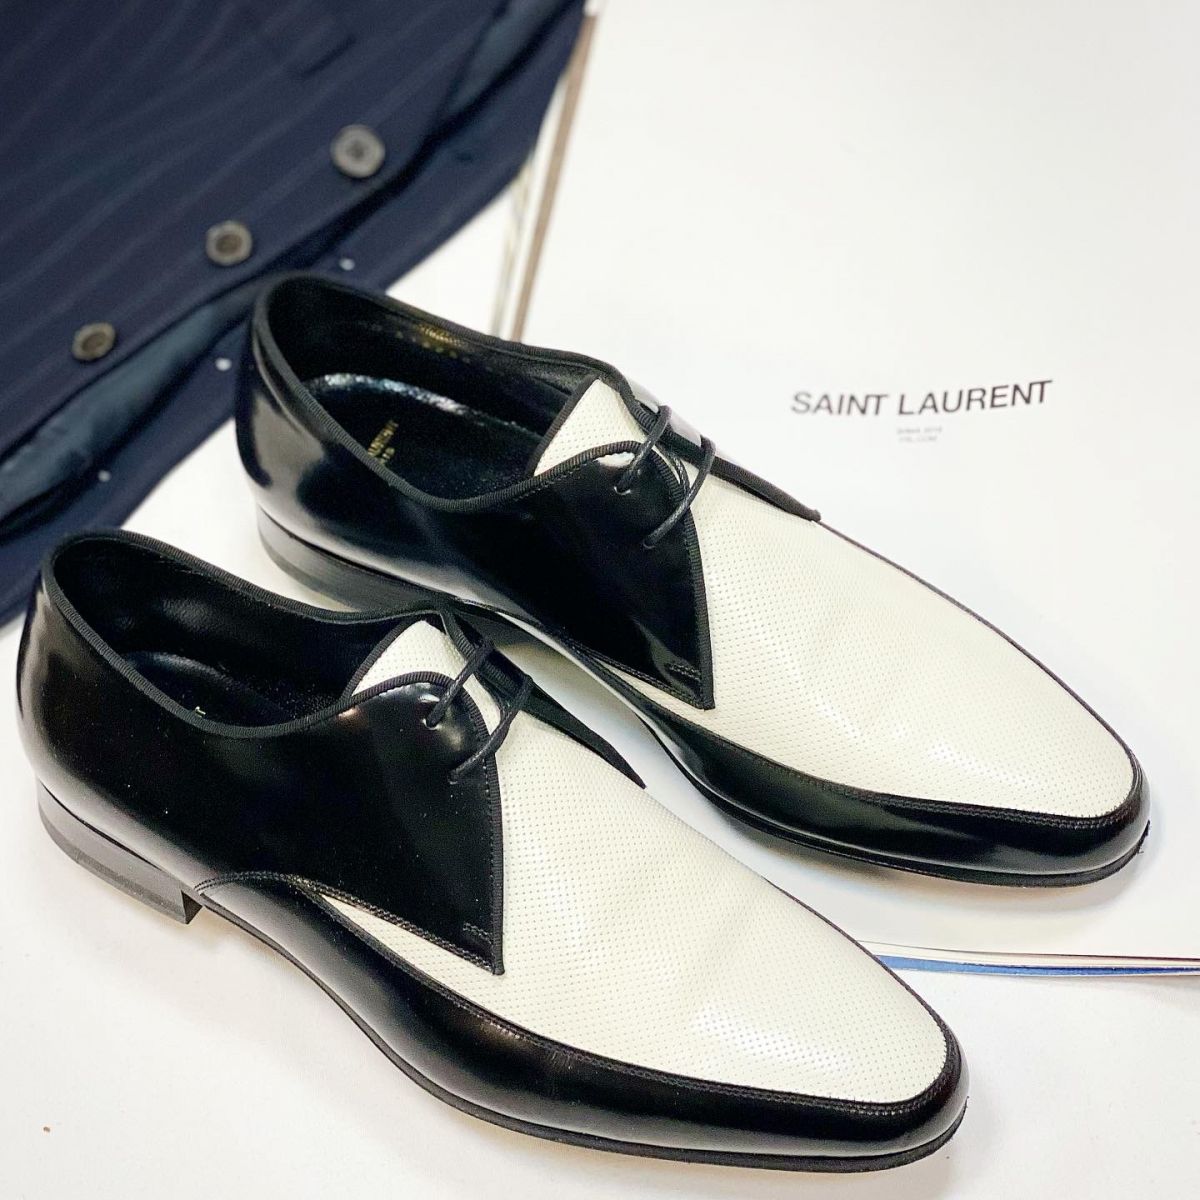 Ботинки Saint Laurent размер 37.5 цена 15 385 руб 